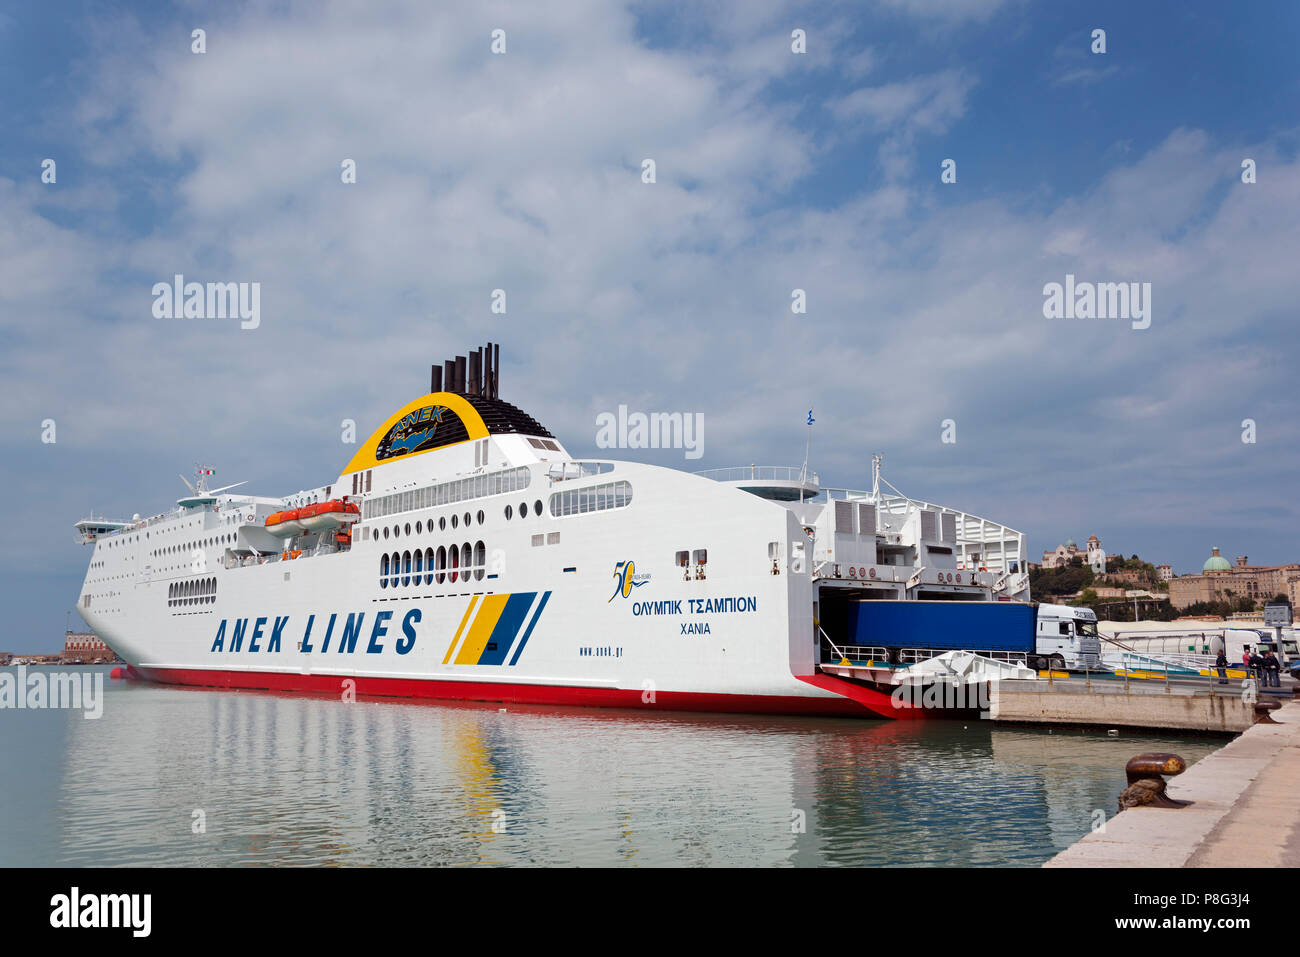 Ferry boat, Ancona, Italy, Anek Lines Stock Photo - Alamy